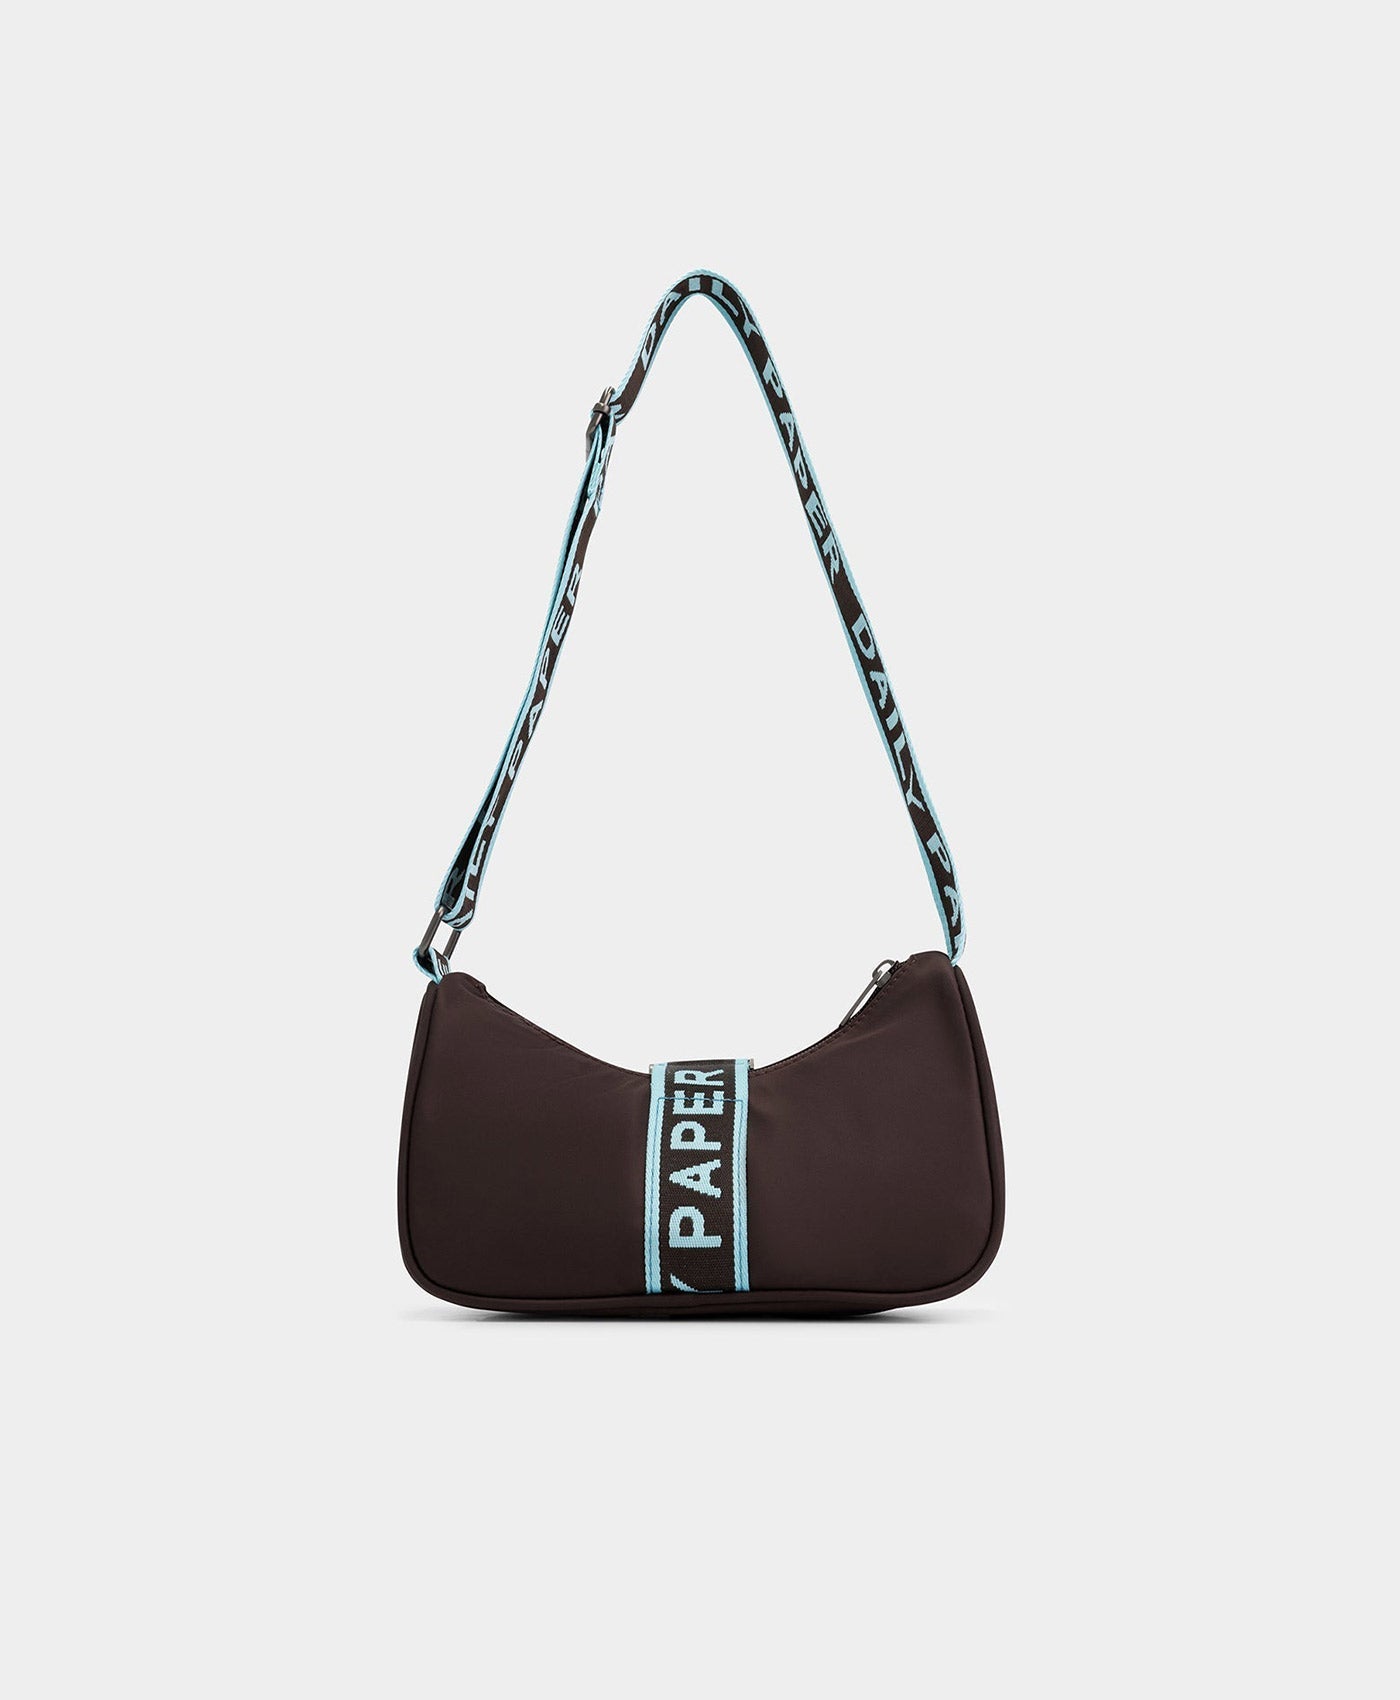 DP - Chocolate Brown Hona Bag - Packshot - Rear